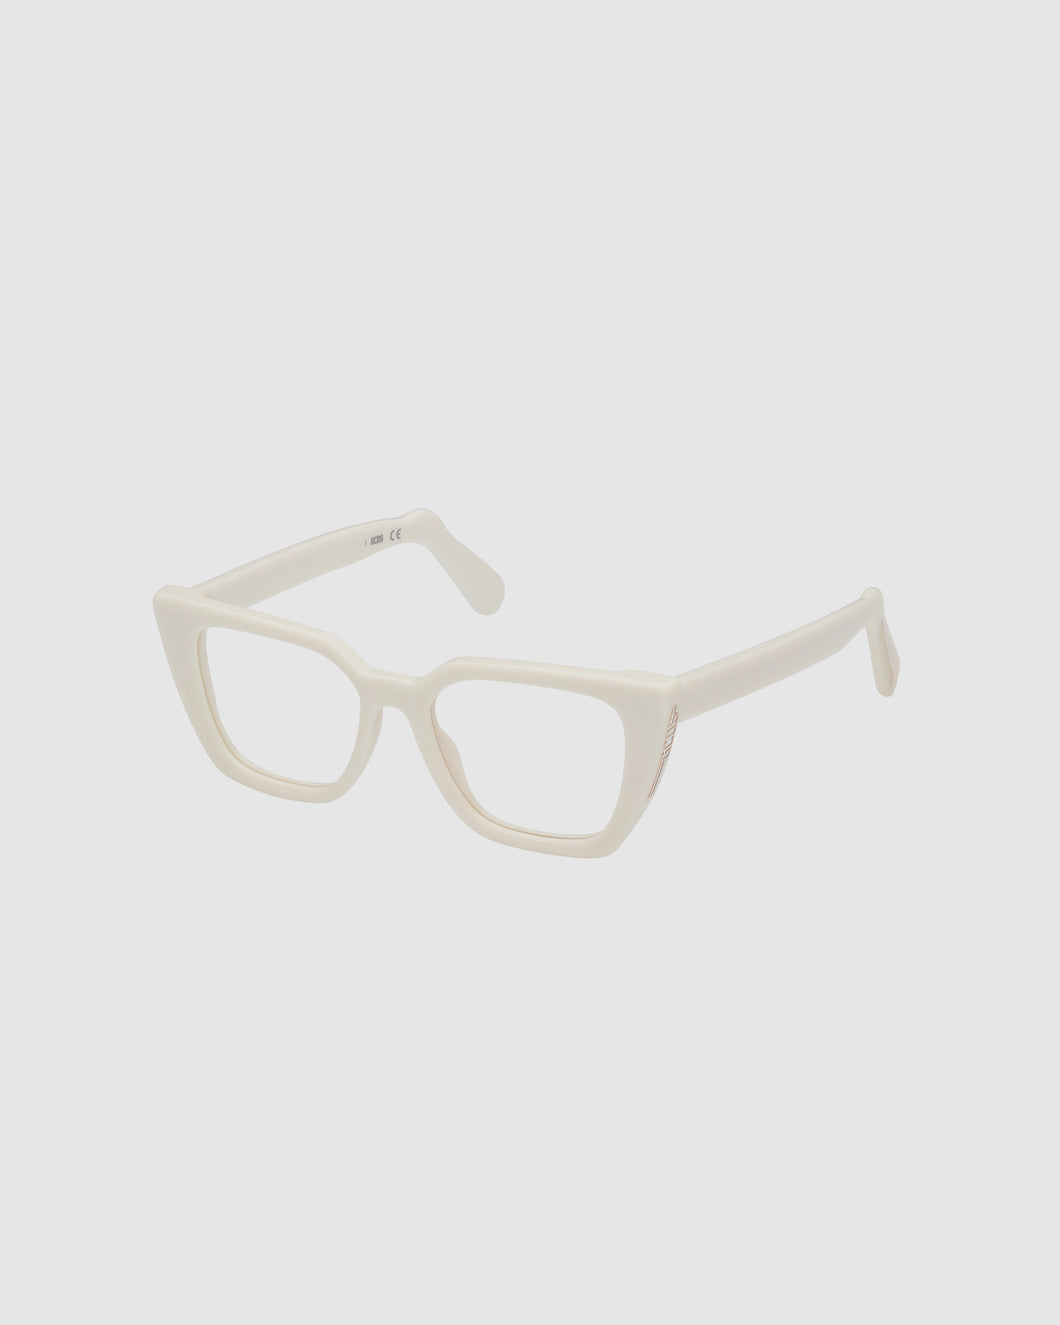 GD5012 Cat-eye eyeglasses : Women Sunglasses White  | GCDS